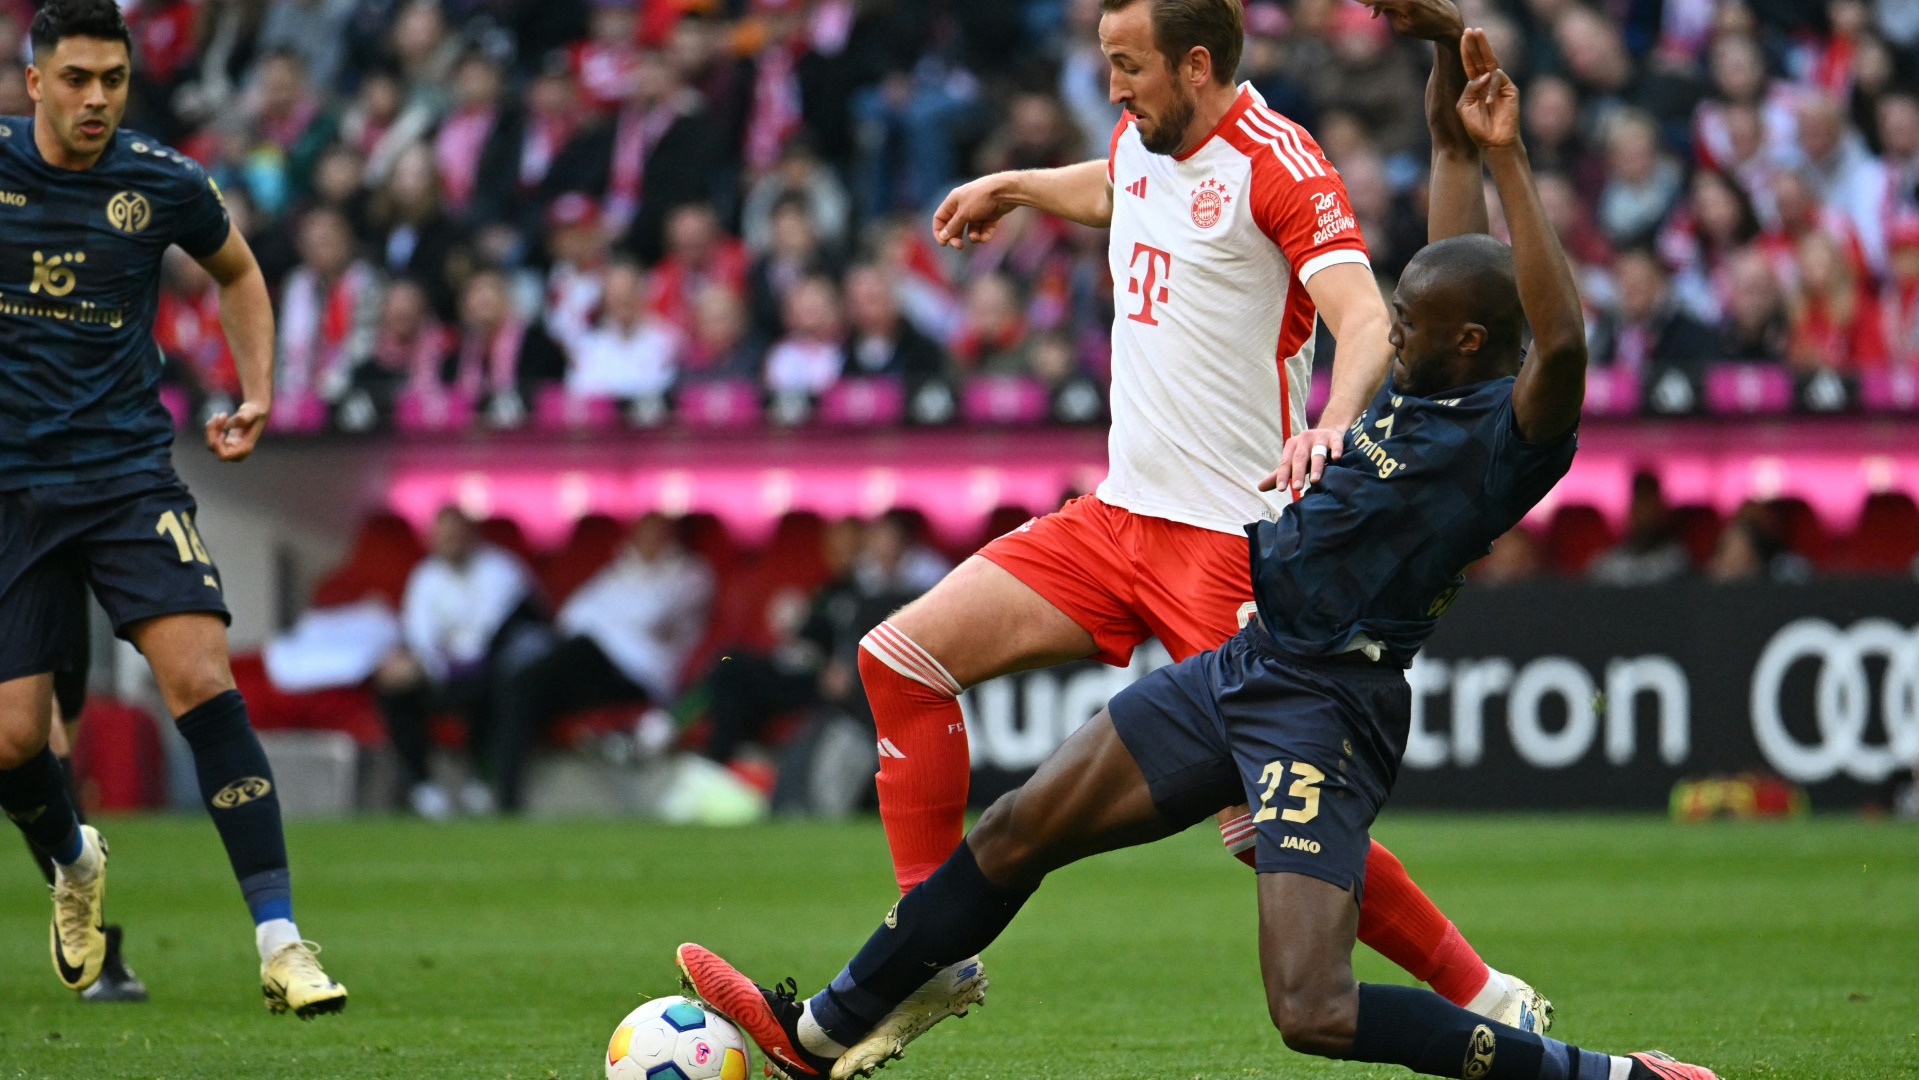 Treffsicher: Harry Kane traf auch gegen Mainz 05 wieder mehrfach